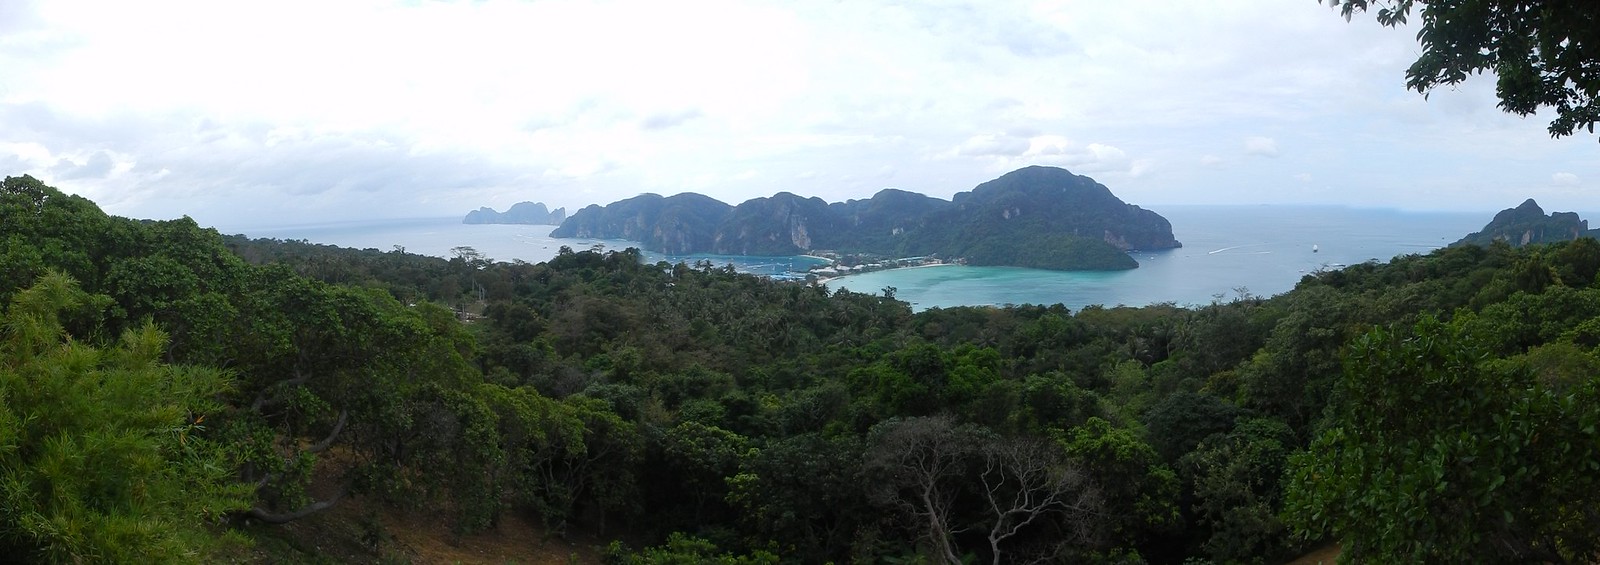 TAILANDIA POR LIBRE: TEMPLOS, ISLAS Y PLAYAS - Blogs de Tailandia - Rumbo a Ao Nang: navegando entre gigantes de roca (6)